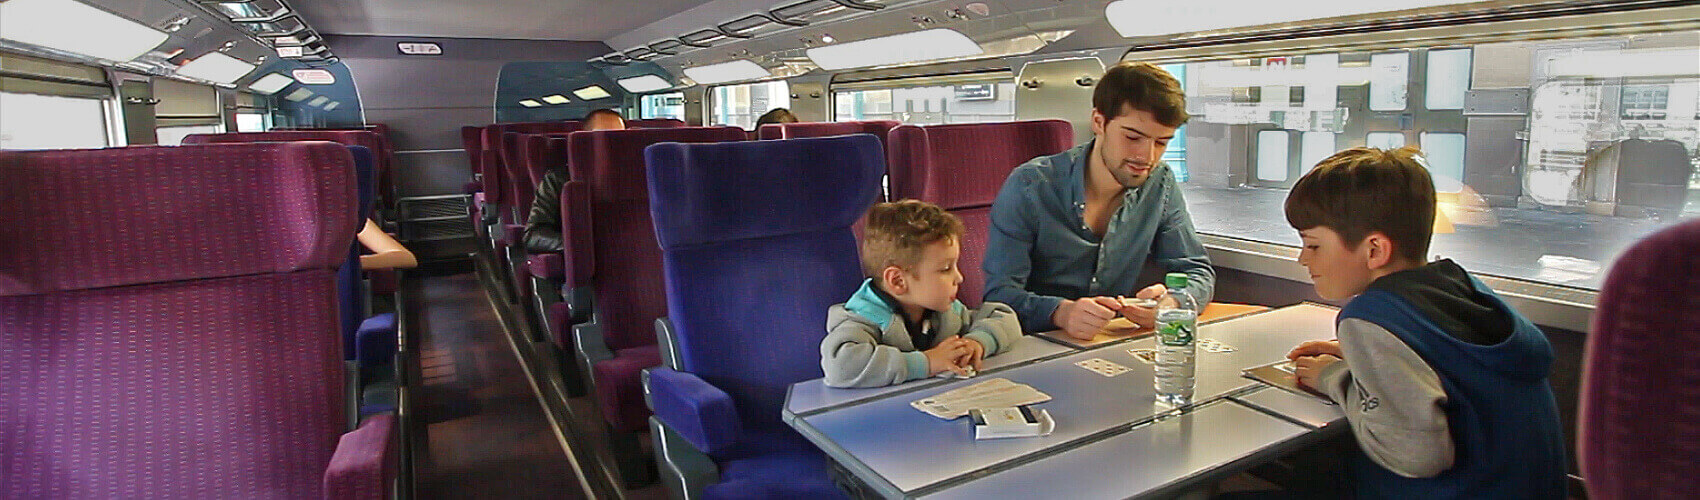 Accompagnement d'enfants en train, bus, et avion